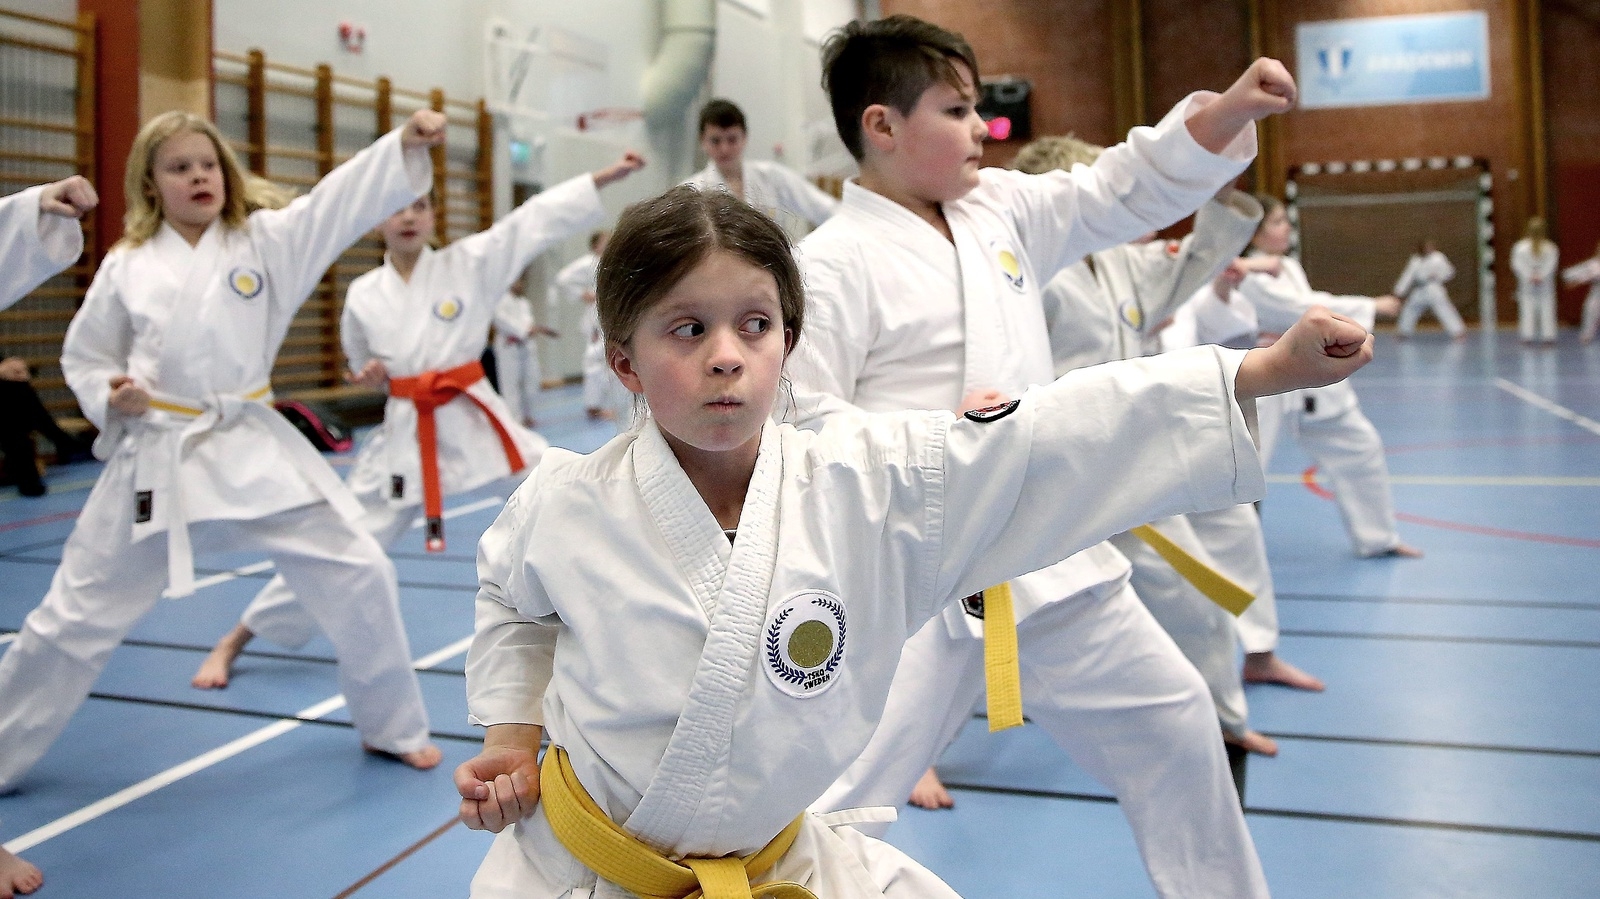 Fokus och koncentration.  Det gäller att ha koll på höger och vänster för Isabelle Simonsen och  övriga karatekas.
Foto: Stefan Sandström